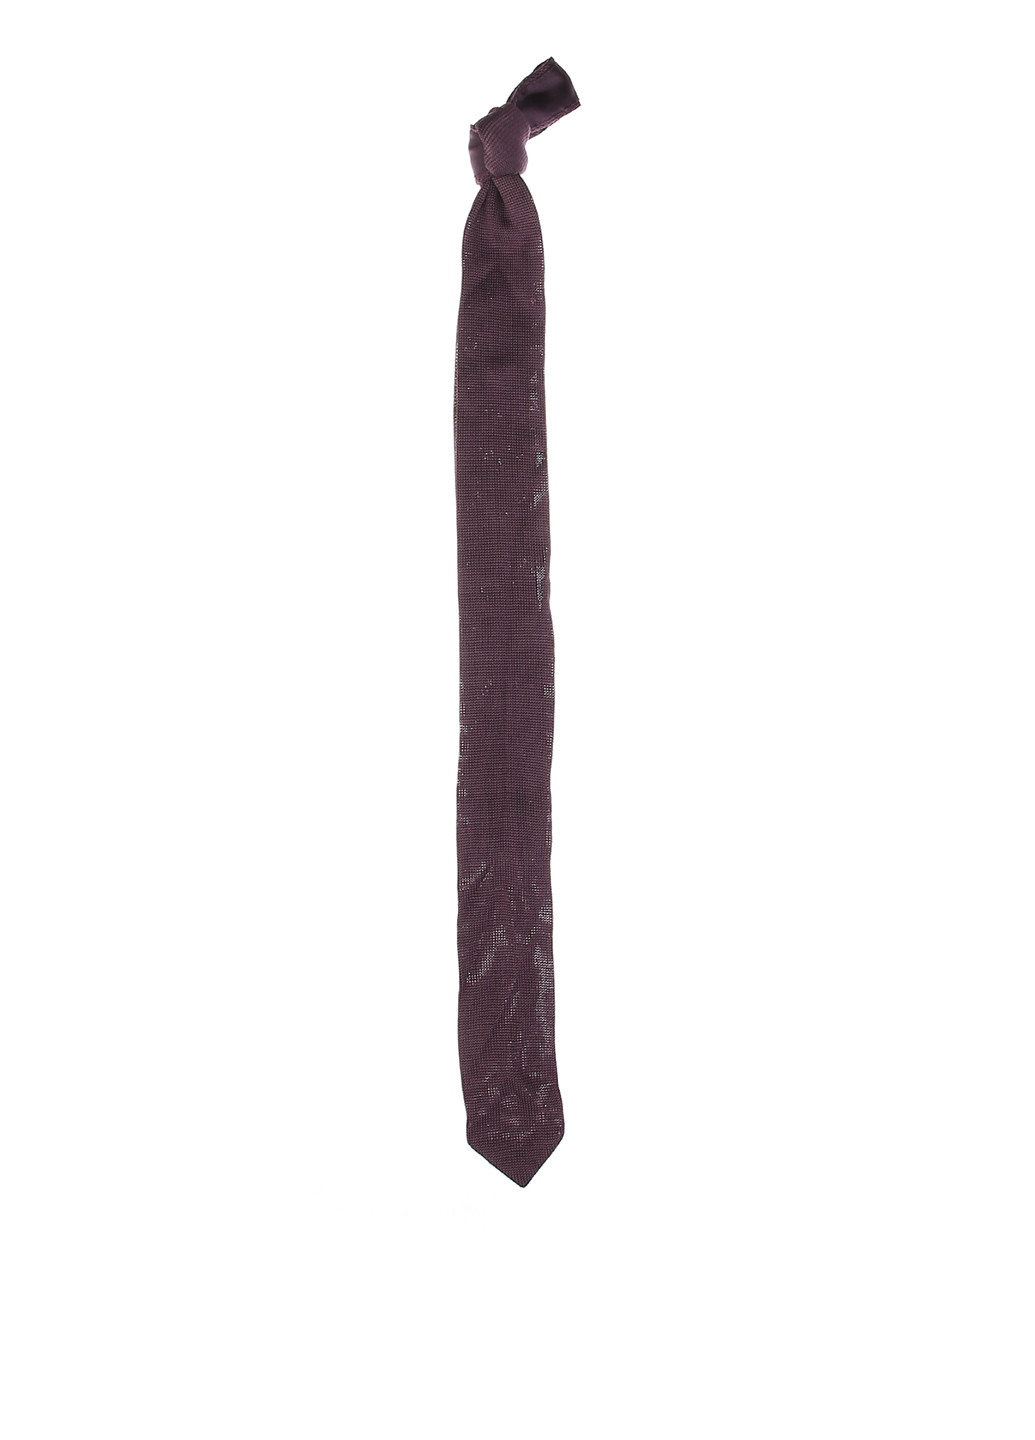 Галстук Cos стандартный однотонный тёмно-фиолетовый хлопок, трикотаж